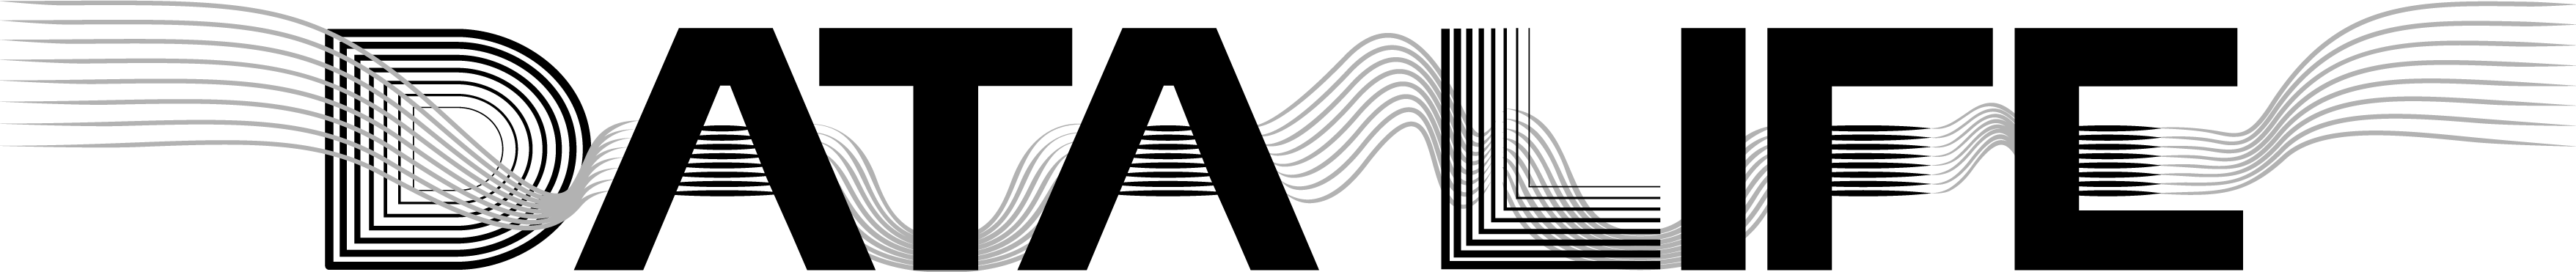 DataLife_black_logo